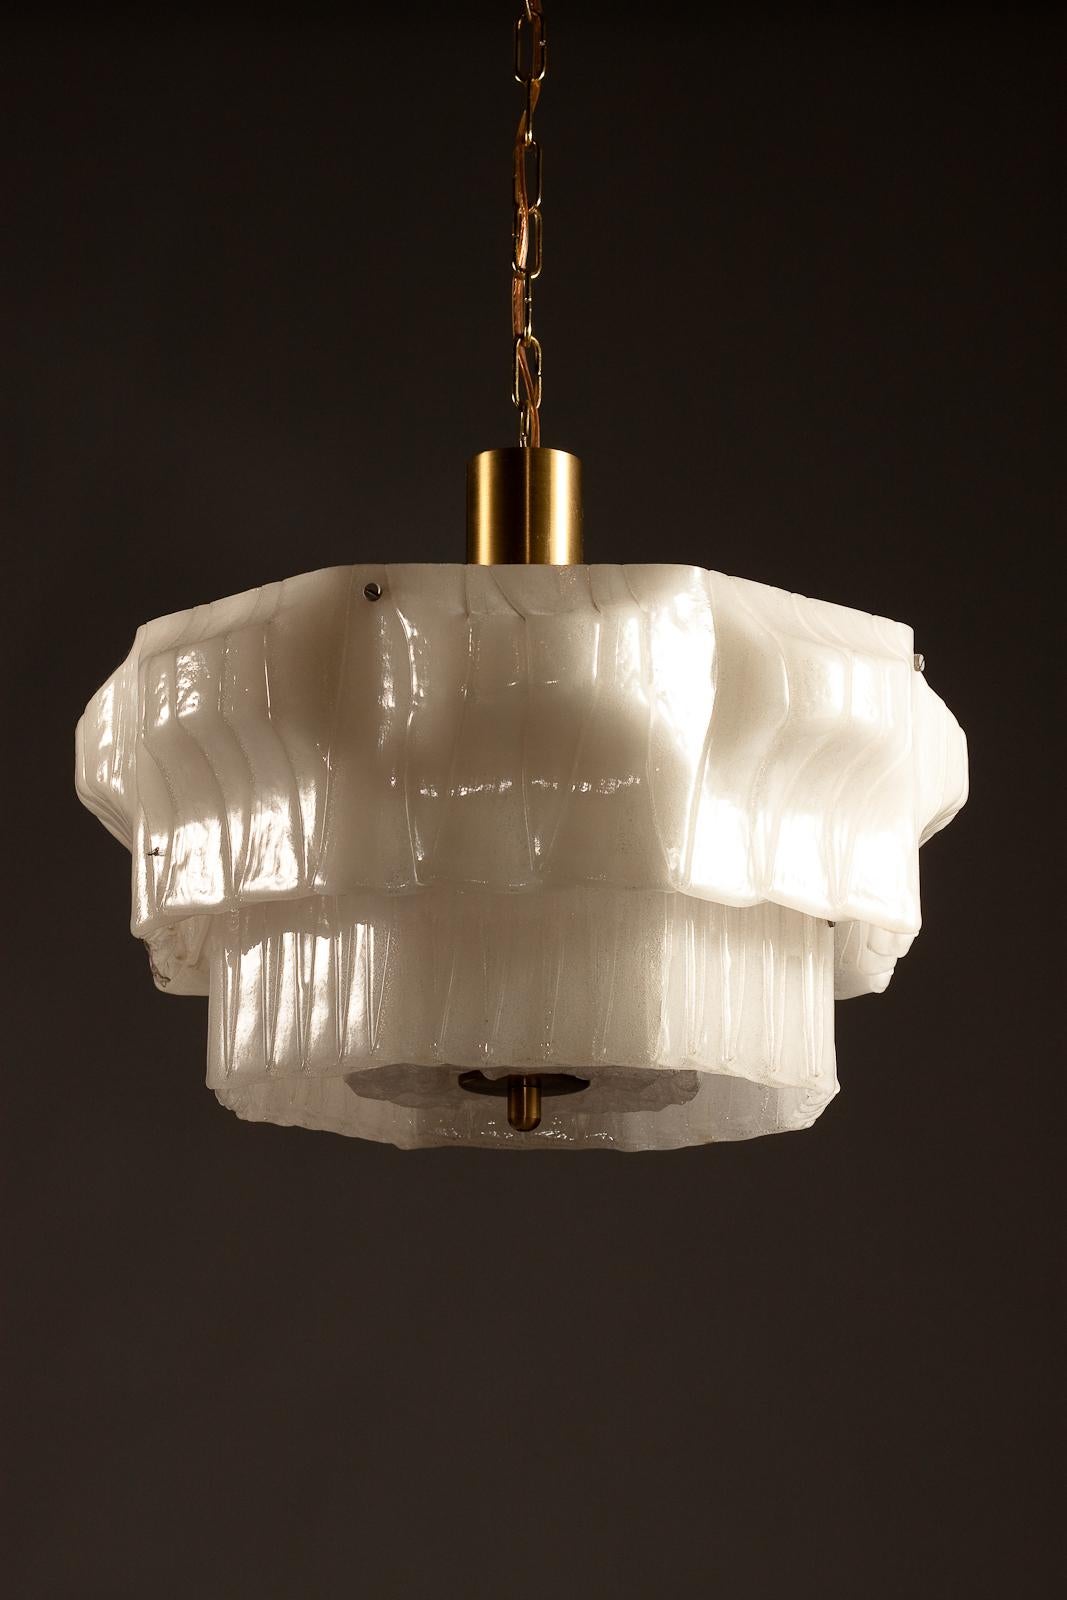 Ajoutez une touche de charme scandinave vintage à votre espace avec cette lampe suspendue en acrylique Valinte Oy des années 1970. Fabriquée en Finlande, cette lampe suspendue en opaline présente un design unique et intéressant qui rehaussera sans